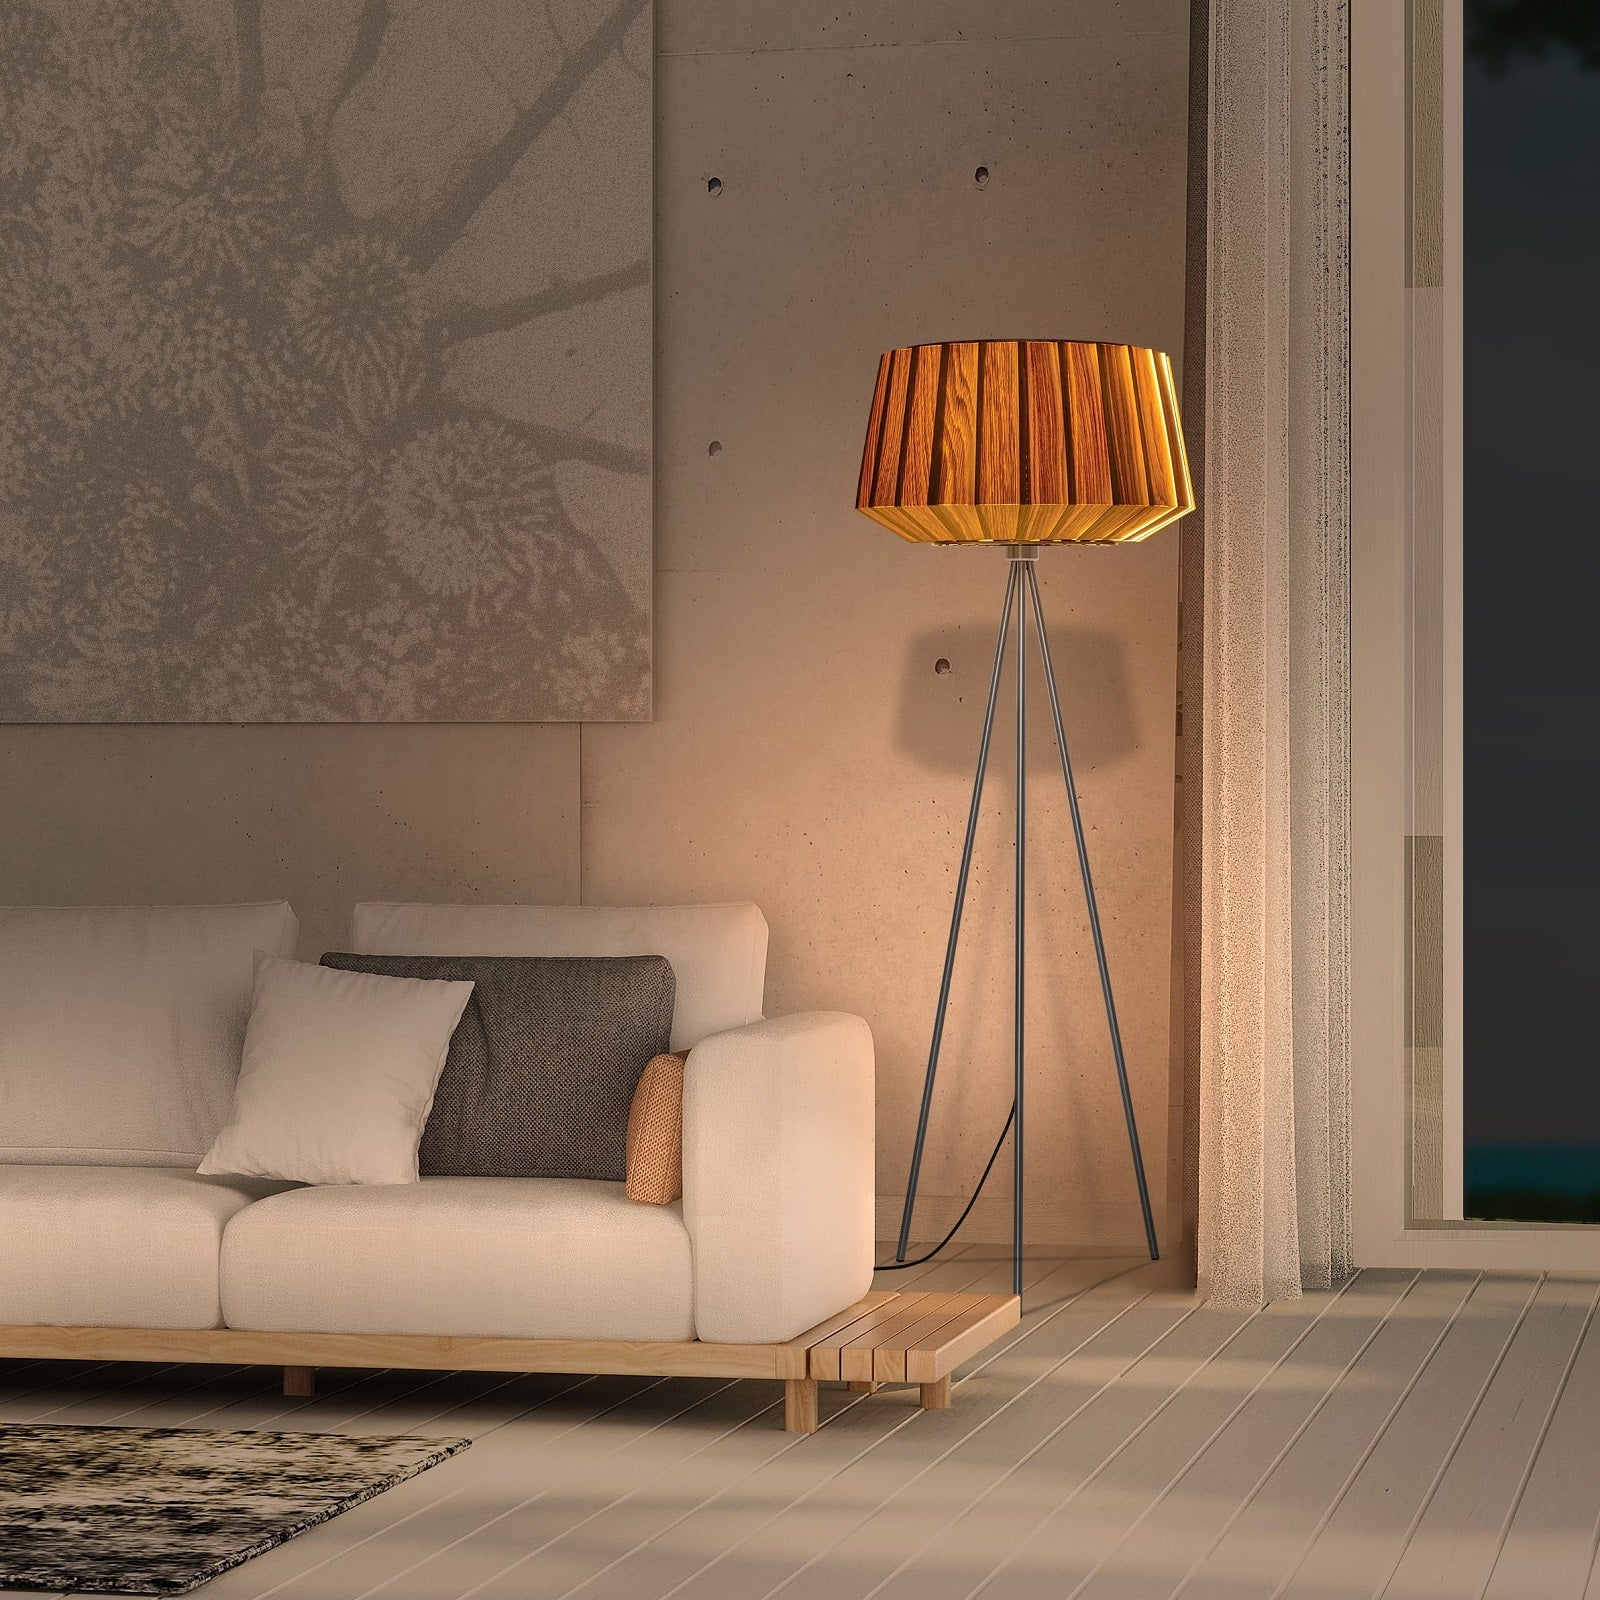 Moderne Dreibein Stehlampe aus Holz in Eiche natur im Wohnzimmer neben einer Couch